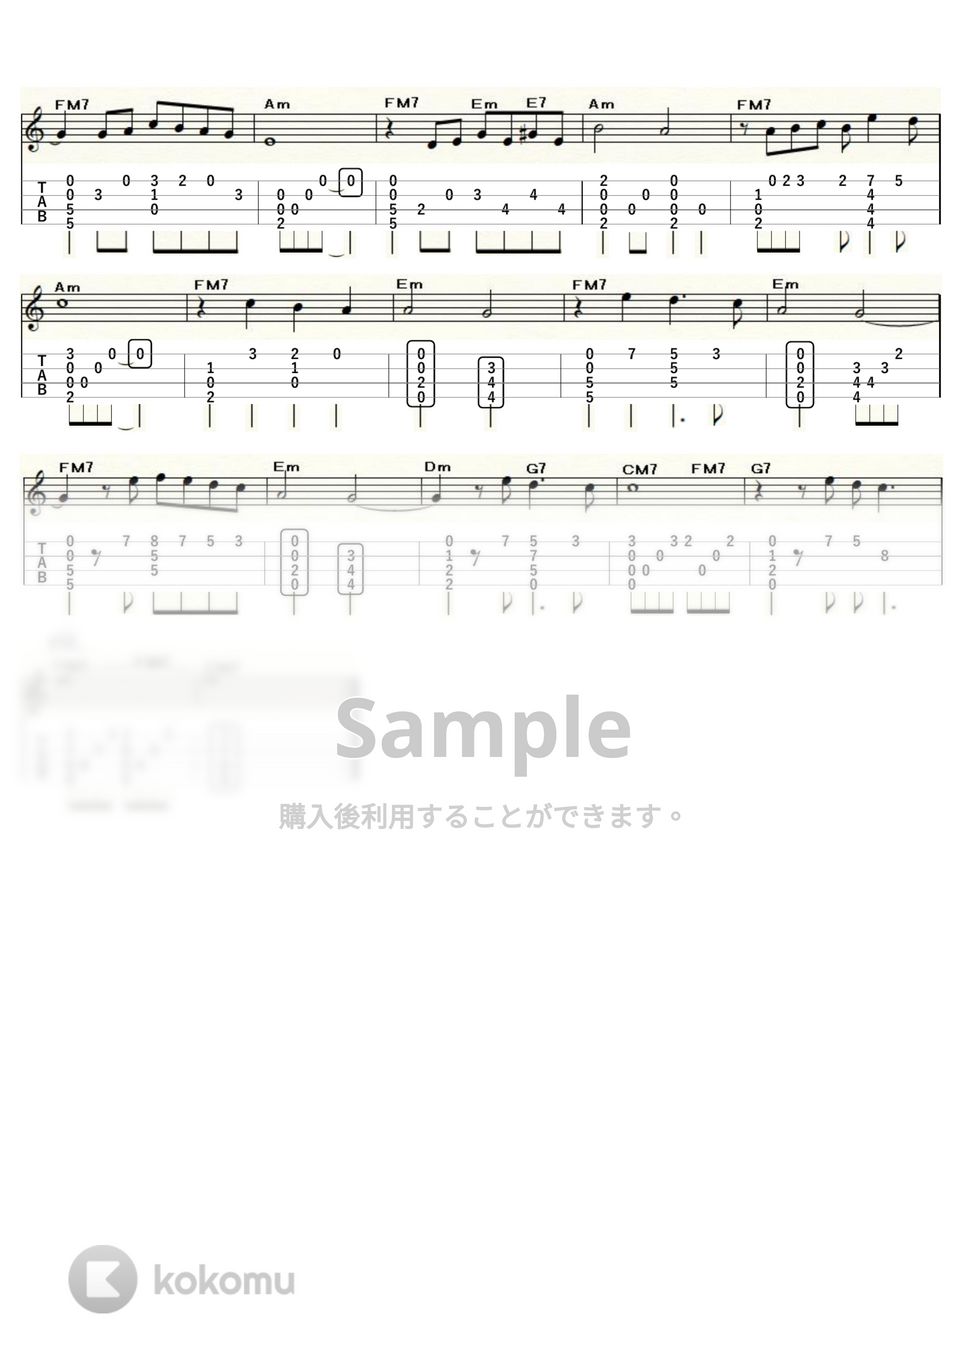 バーブラ・スタライサンド - 追憶-The Way We Were- (ｳｸﾚﾚｿﾛ / High-G,Low-G / 中級) by ukulelepapa